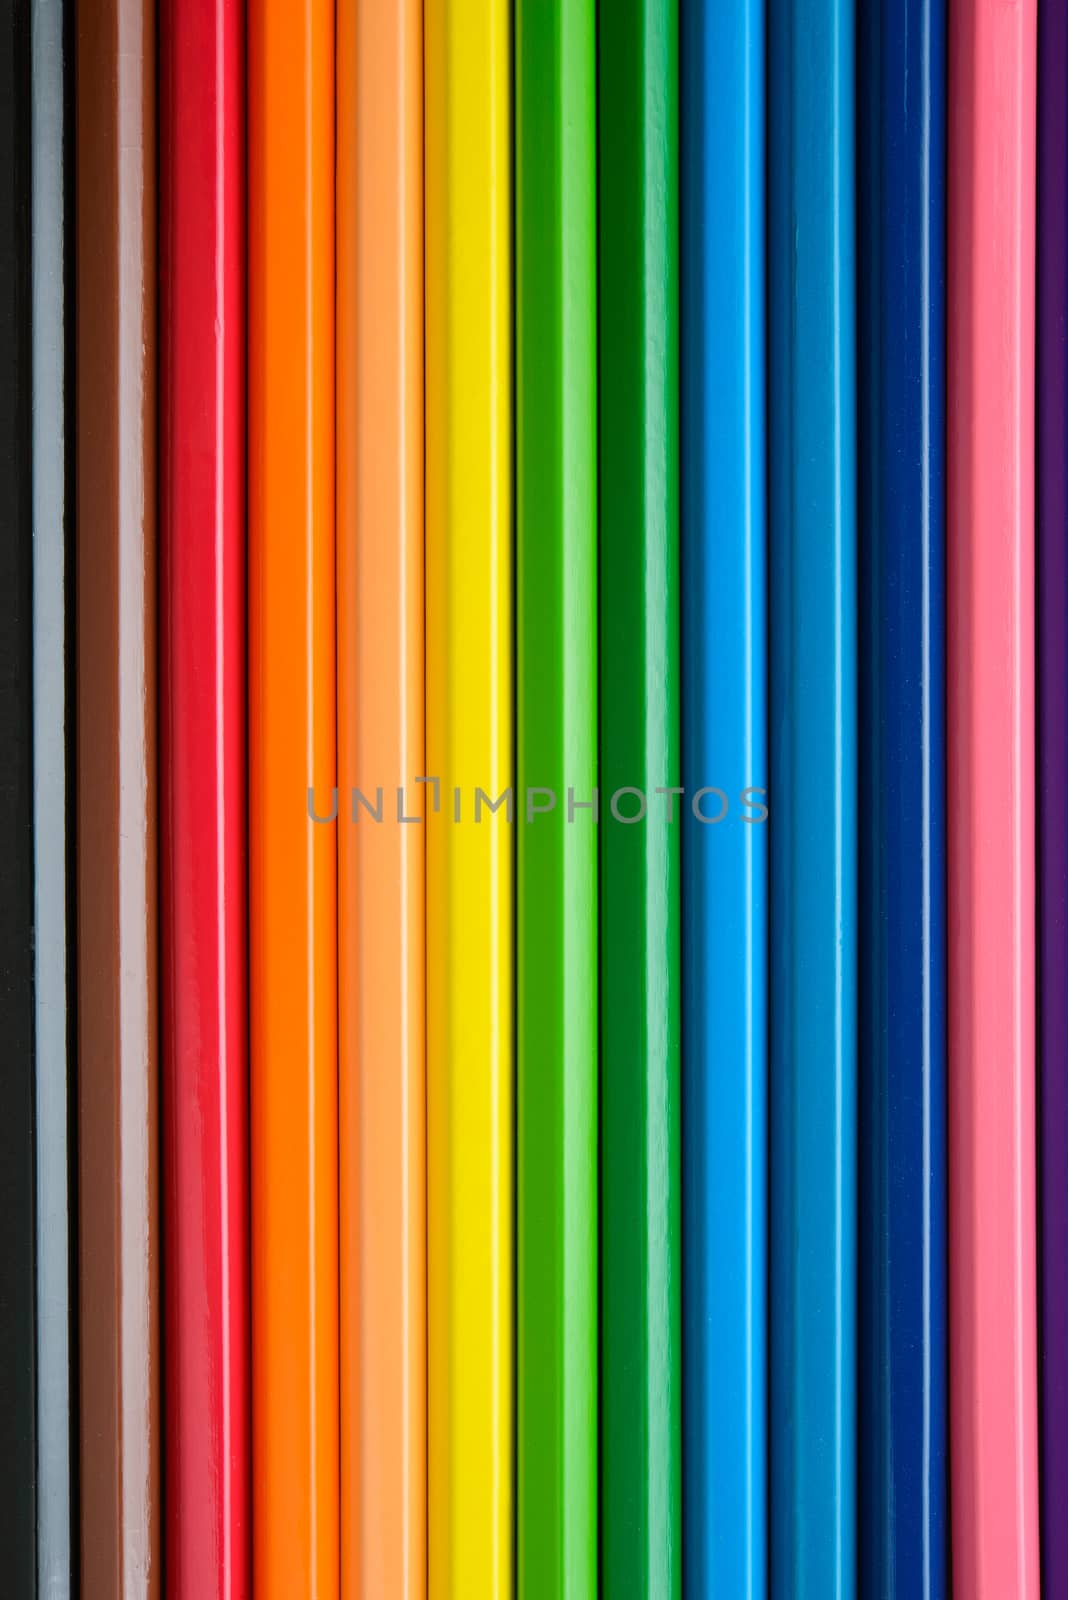 color pencils by antpkr